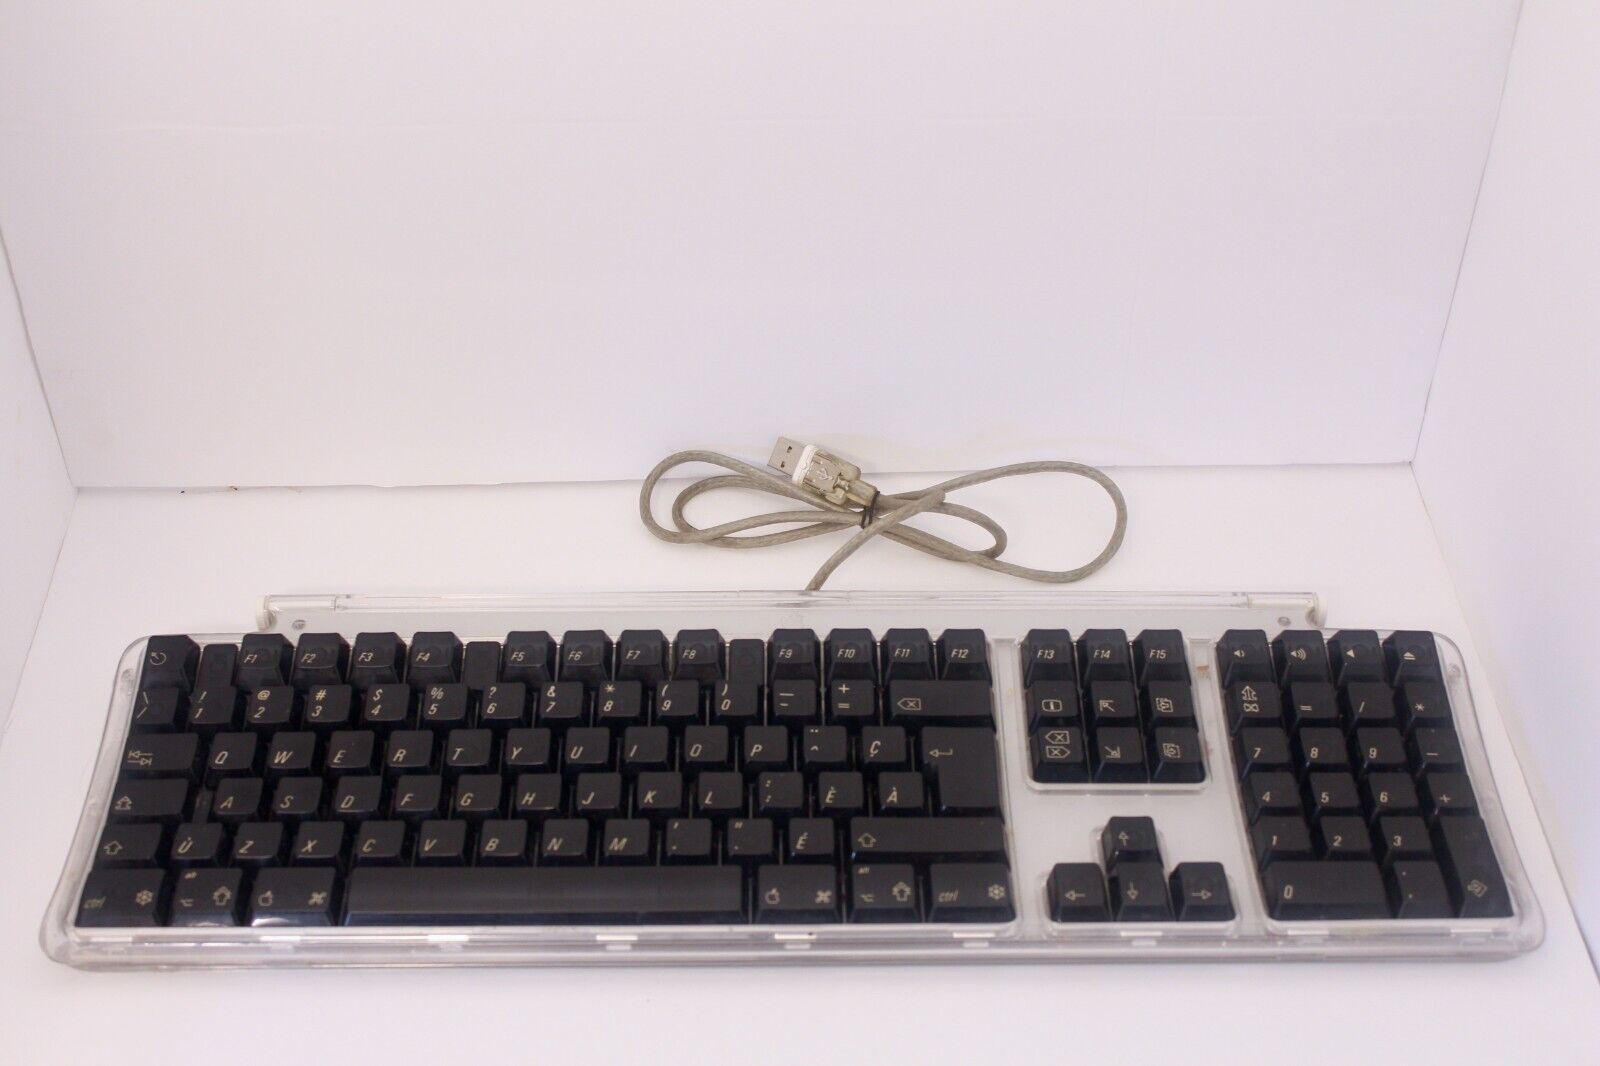 Vintage Apple Pro Keyboard M7803 (Silver w/Black Keys) Wired-USB Full Sized